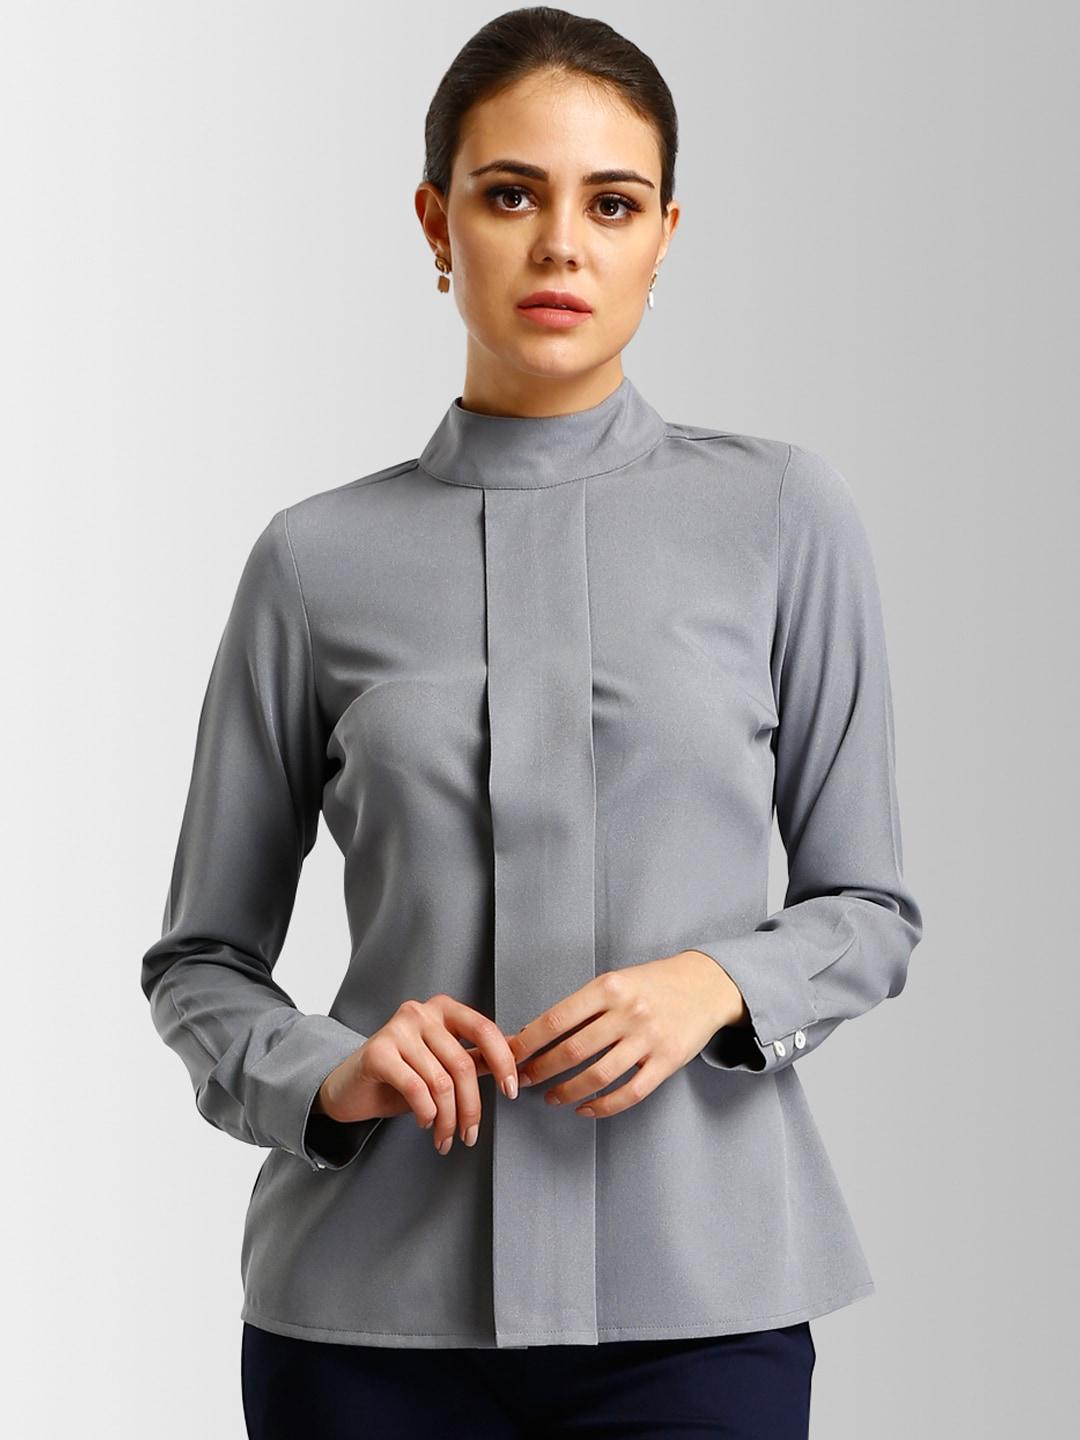 fablestreet-women-grey-solid-top